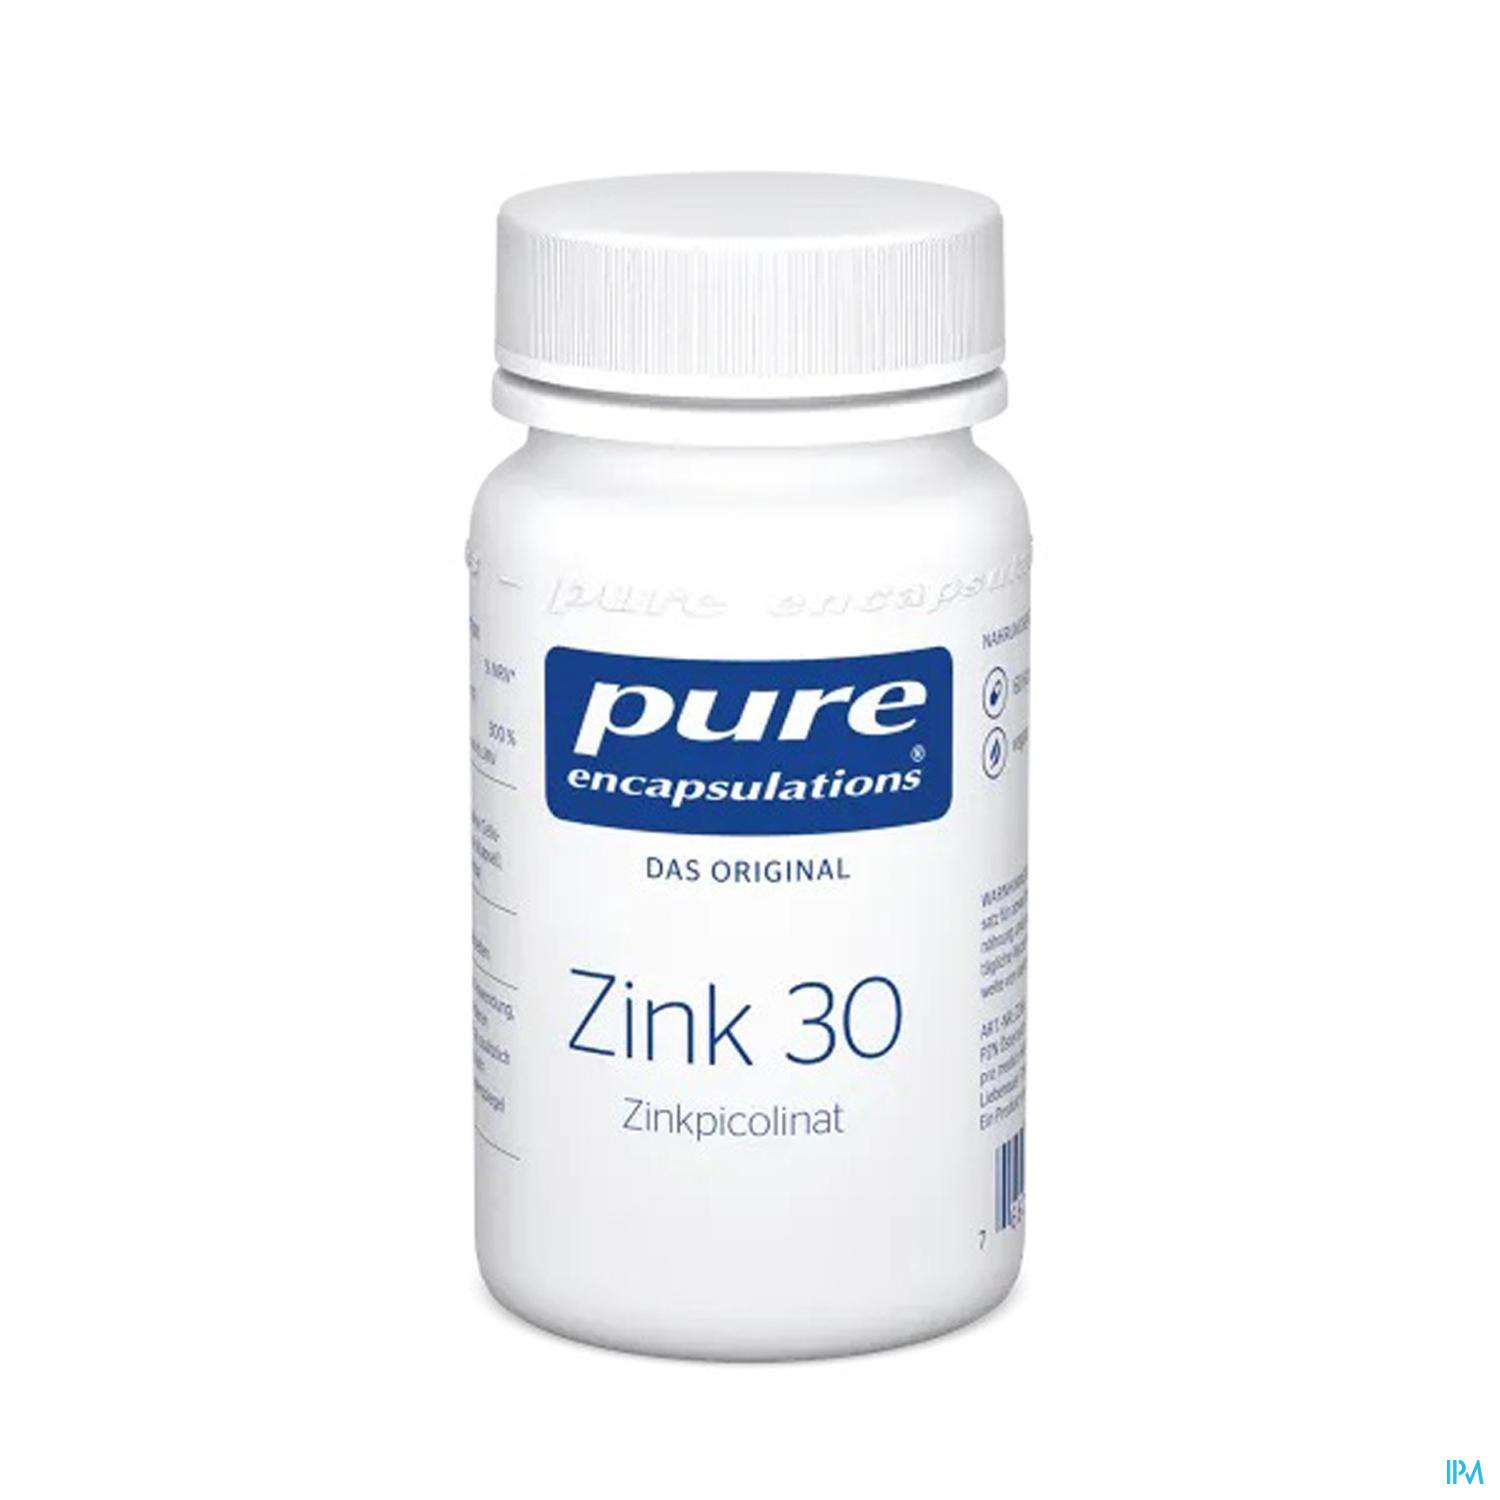 Pure Encapsulations Zink 30 (zinkpicolinat) 60 Kapseln